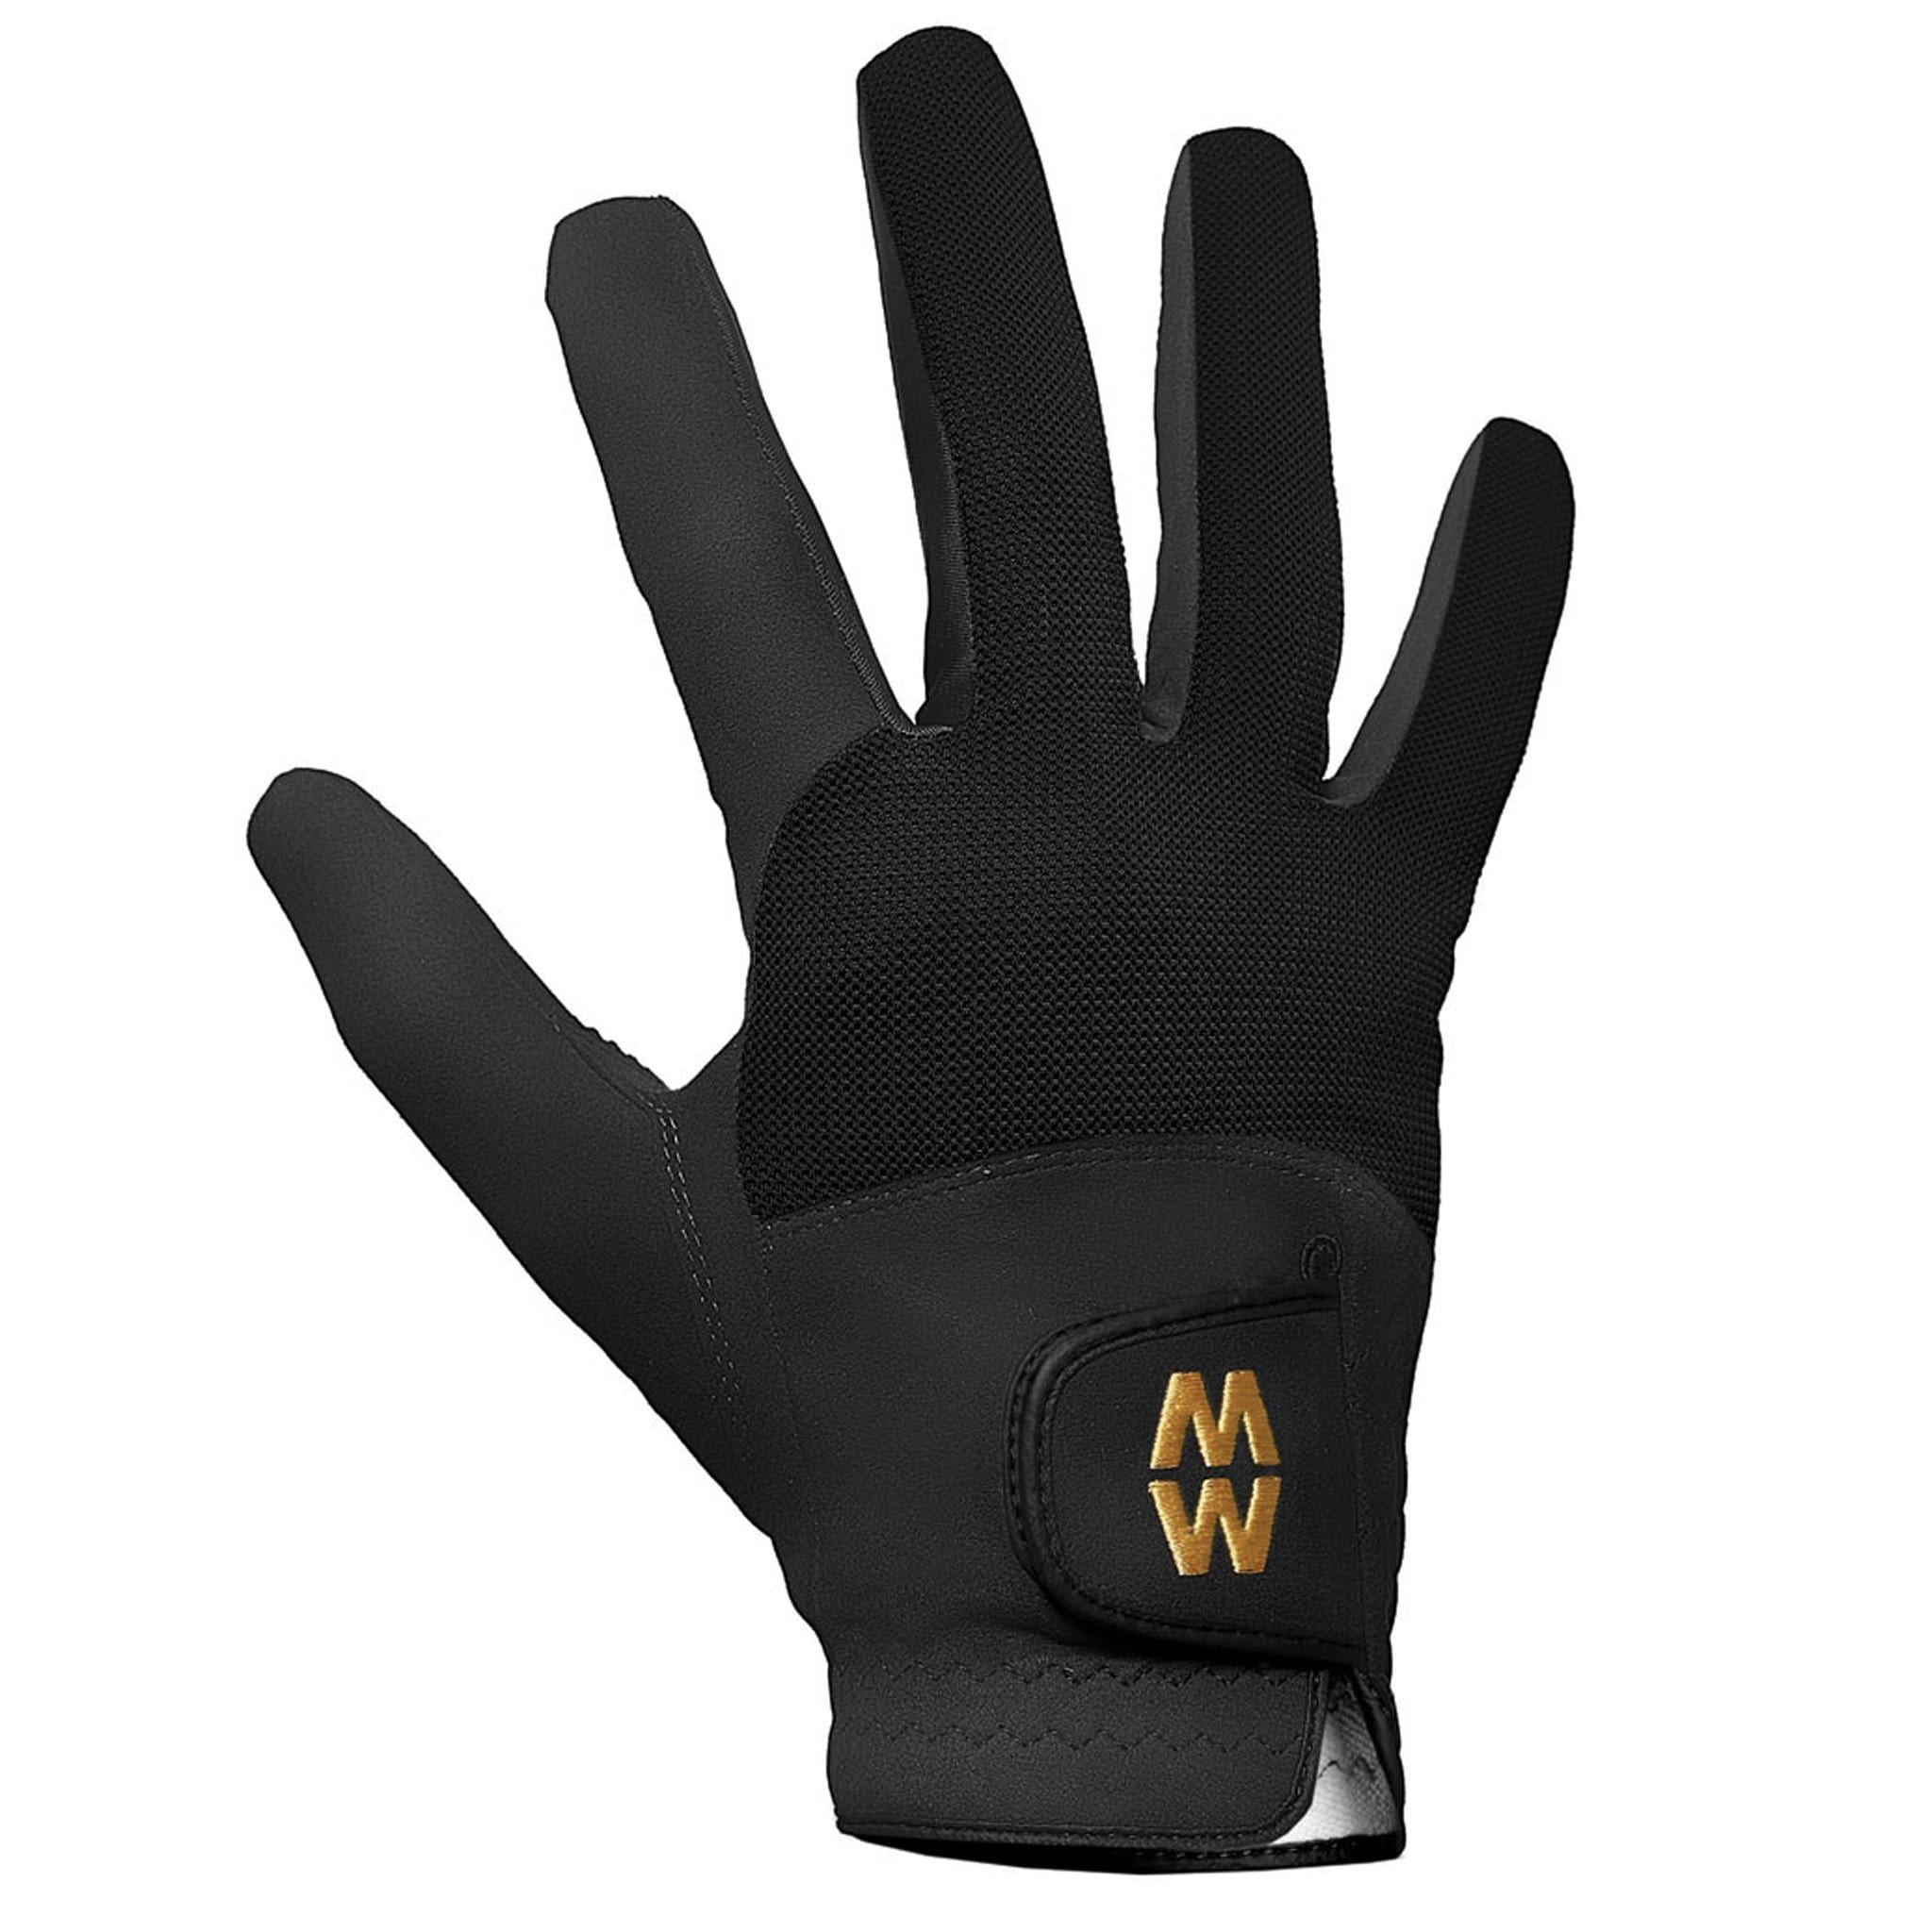 MacWet Mesh Short Cuff Gloves